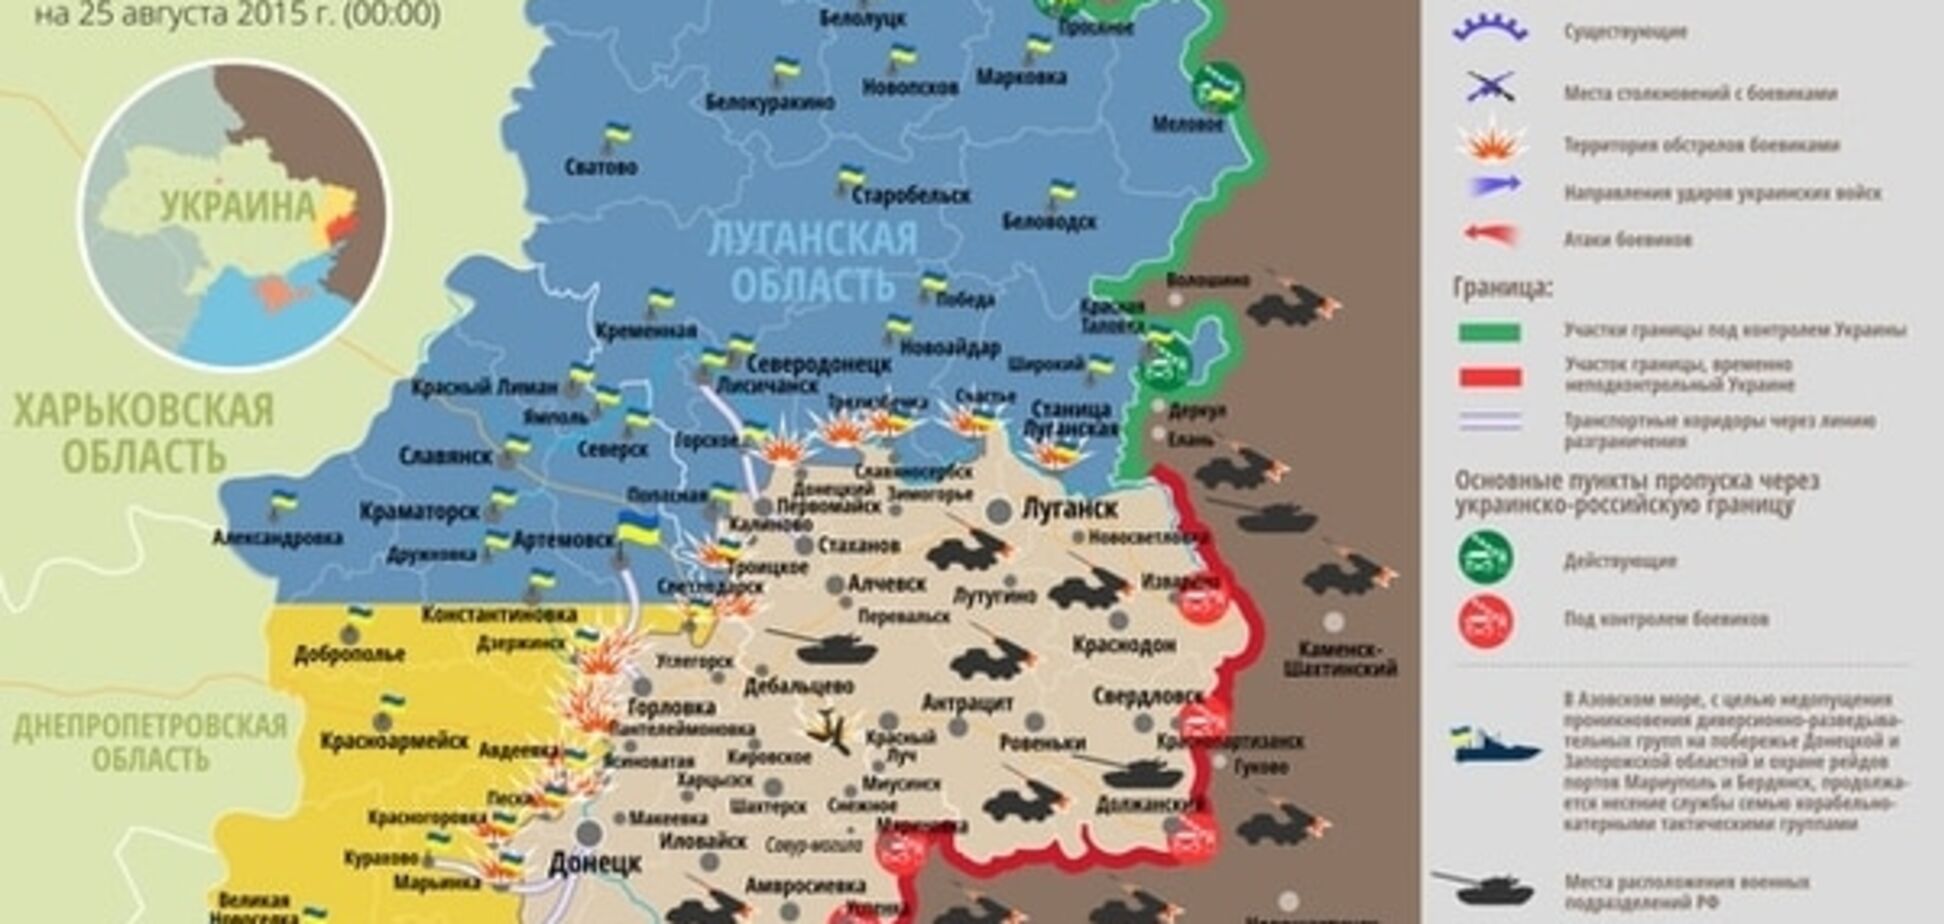 За минулу добу на Донецькому напрямку було тихо, на Маріупольському - 'спекотно': опублікована карта АТО